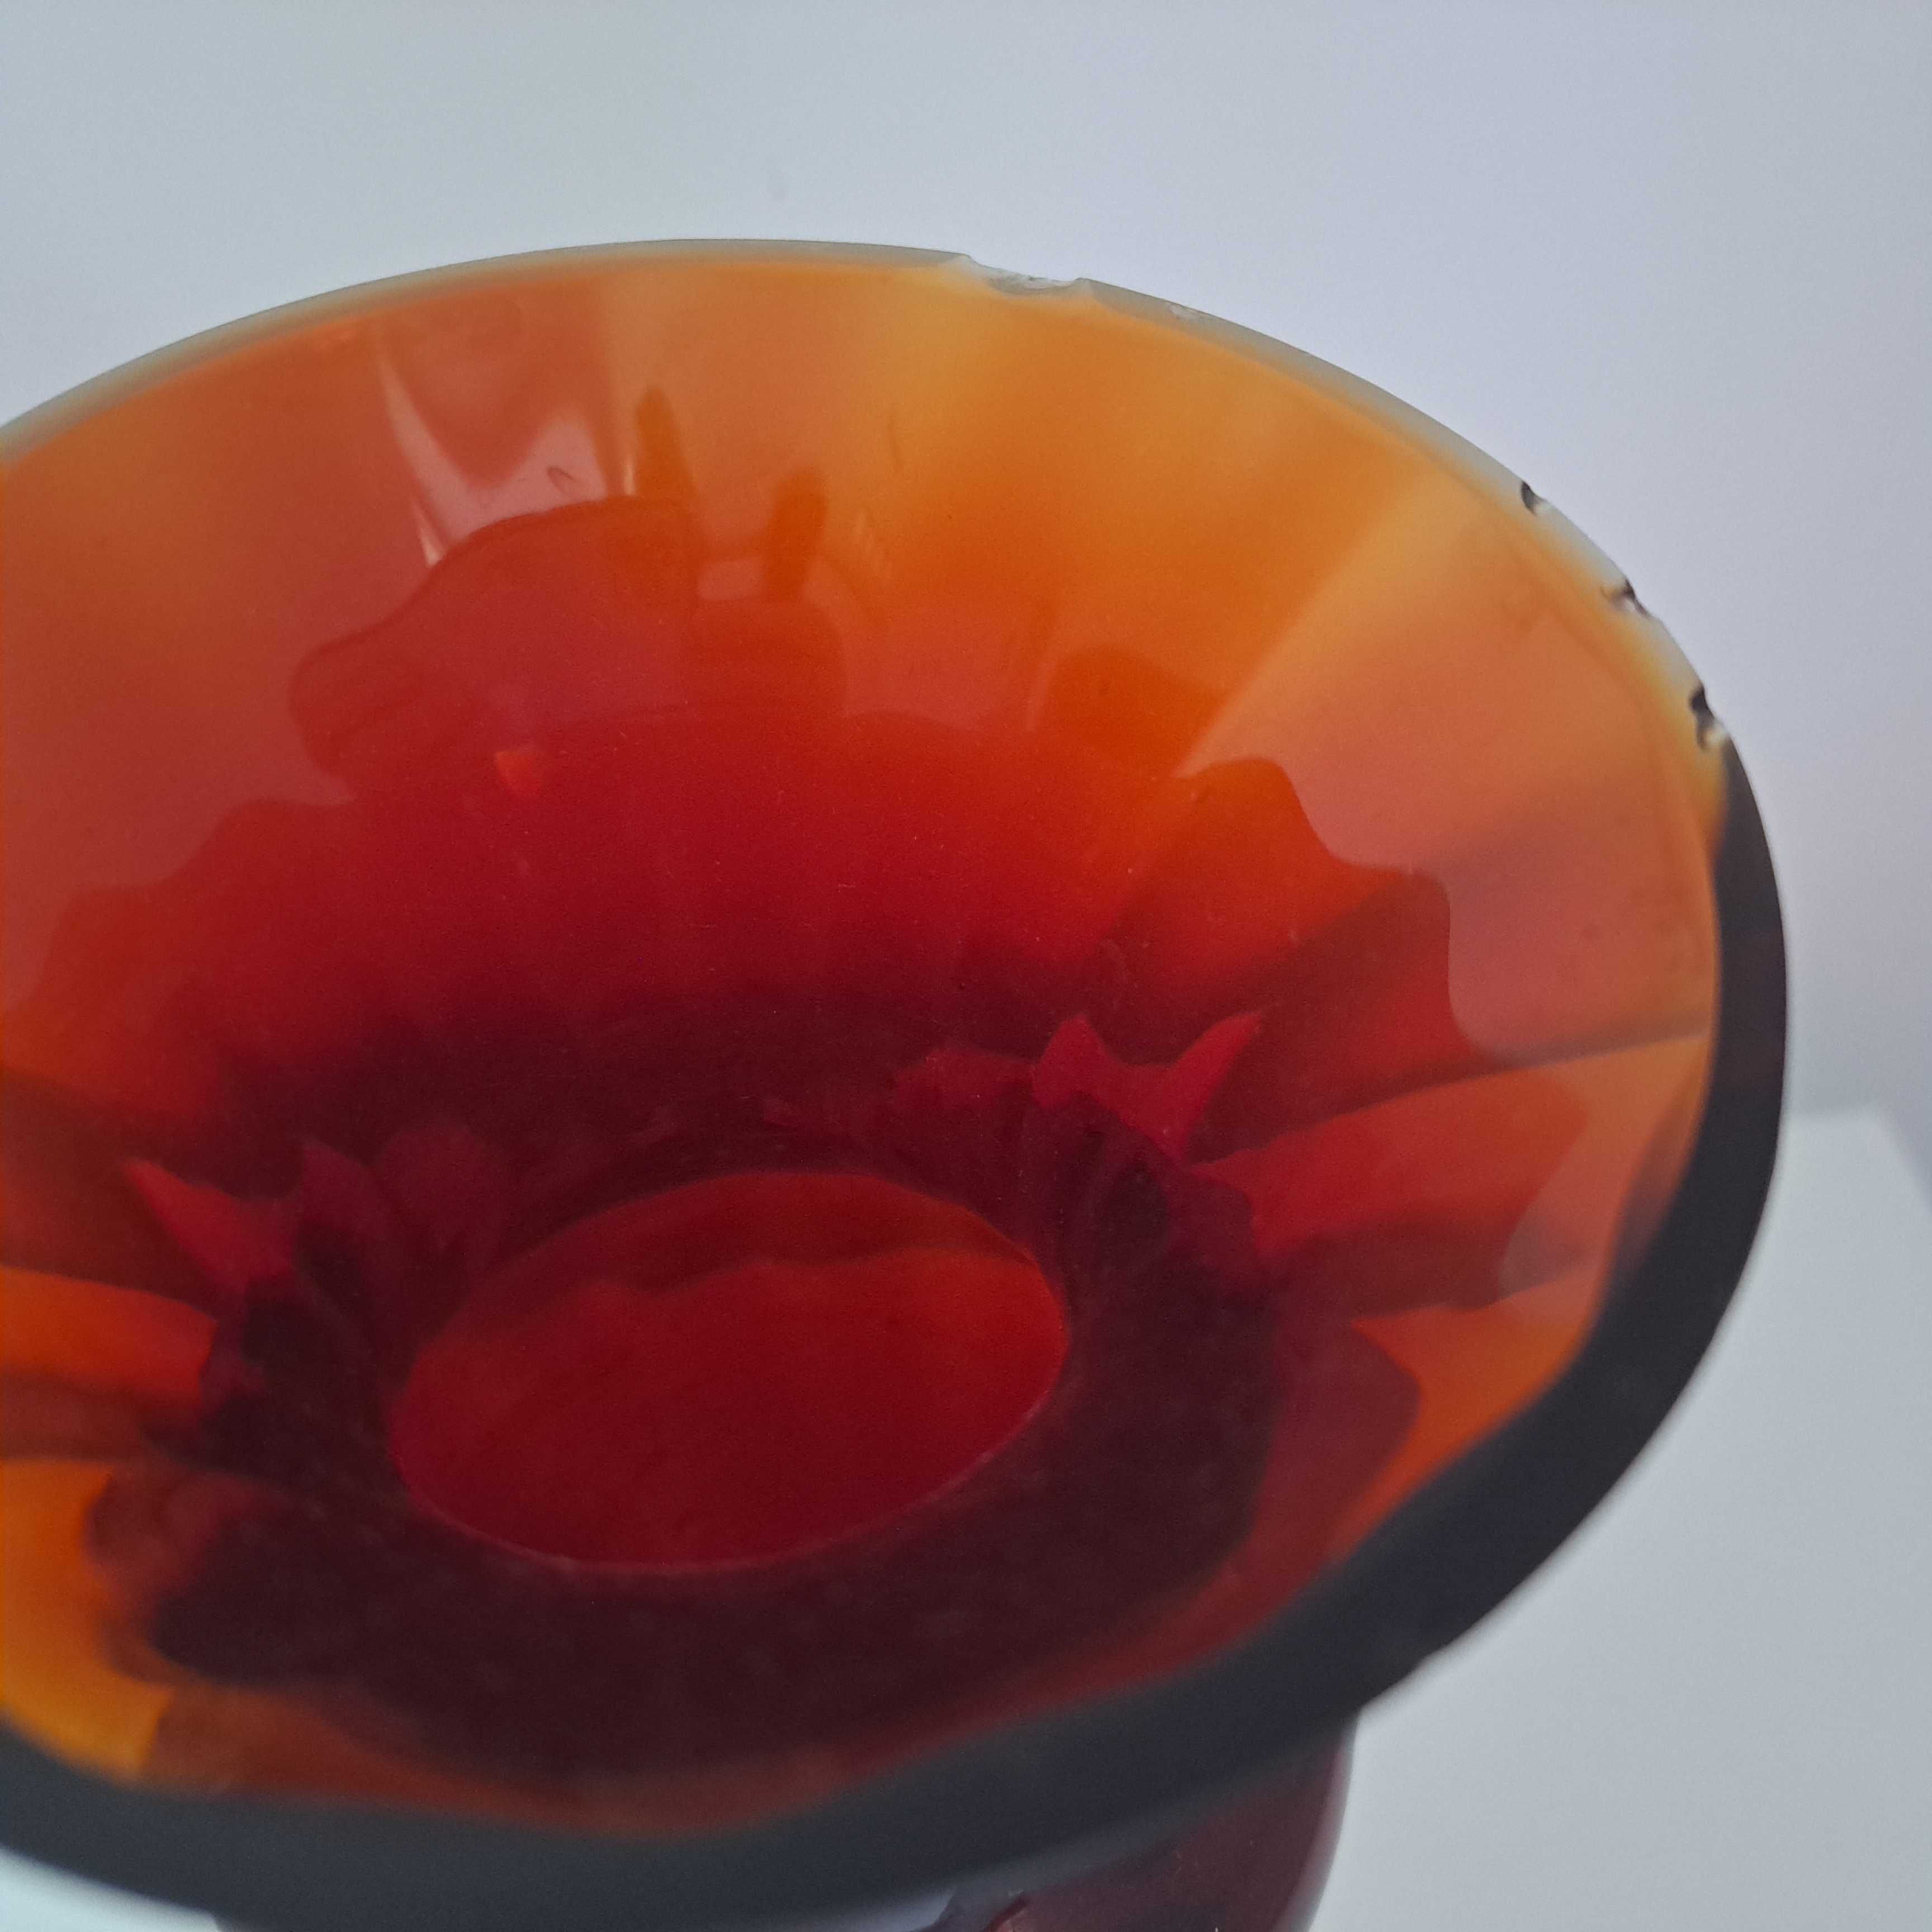 Duży szklany kielich, wazon w kolorze bordo, oryginalny PRL